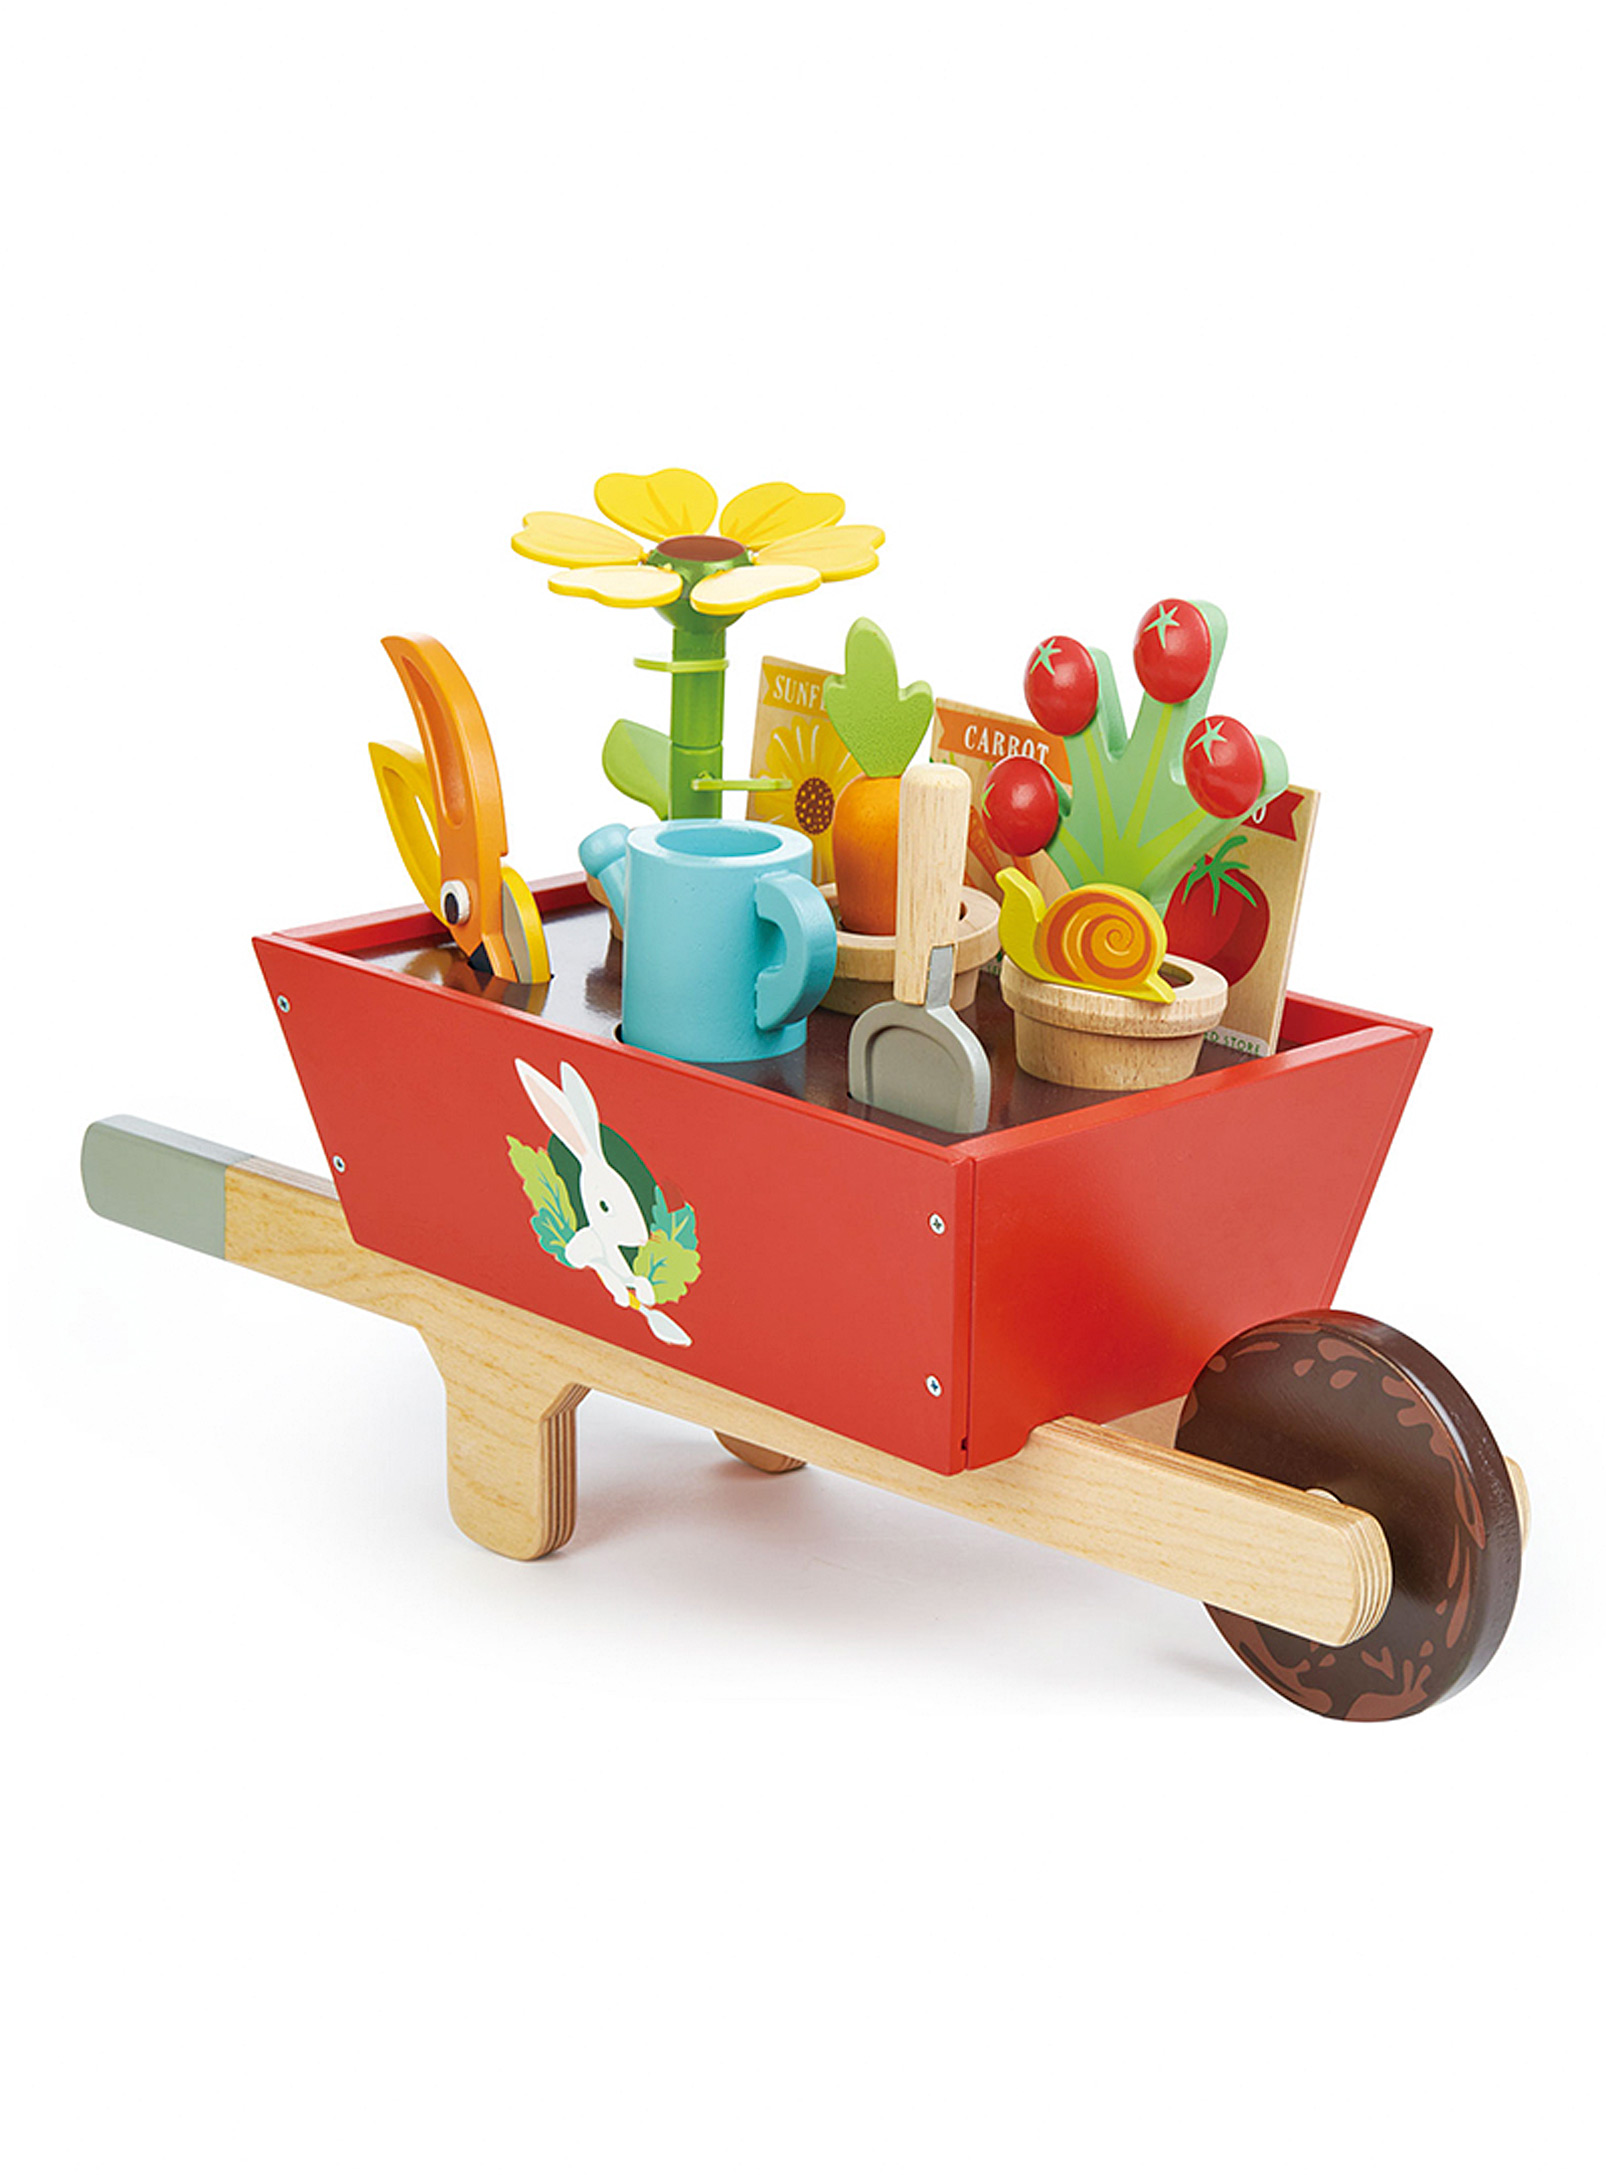 Tender Leaf Toys - Wooden garden wheelbarrow and accessories 31-piece set